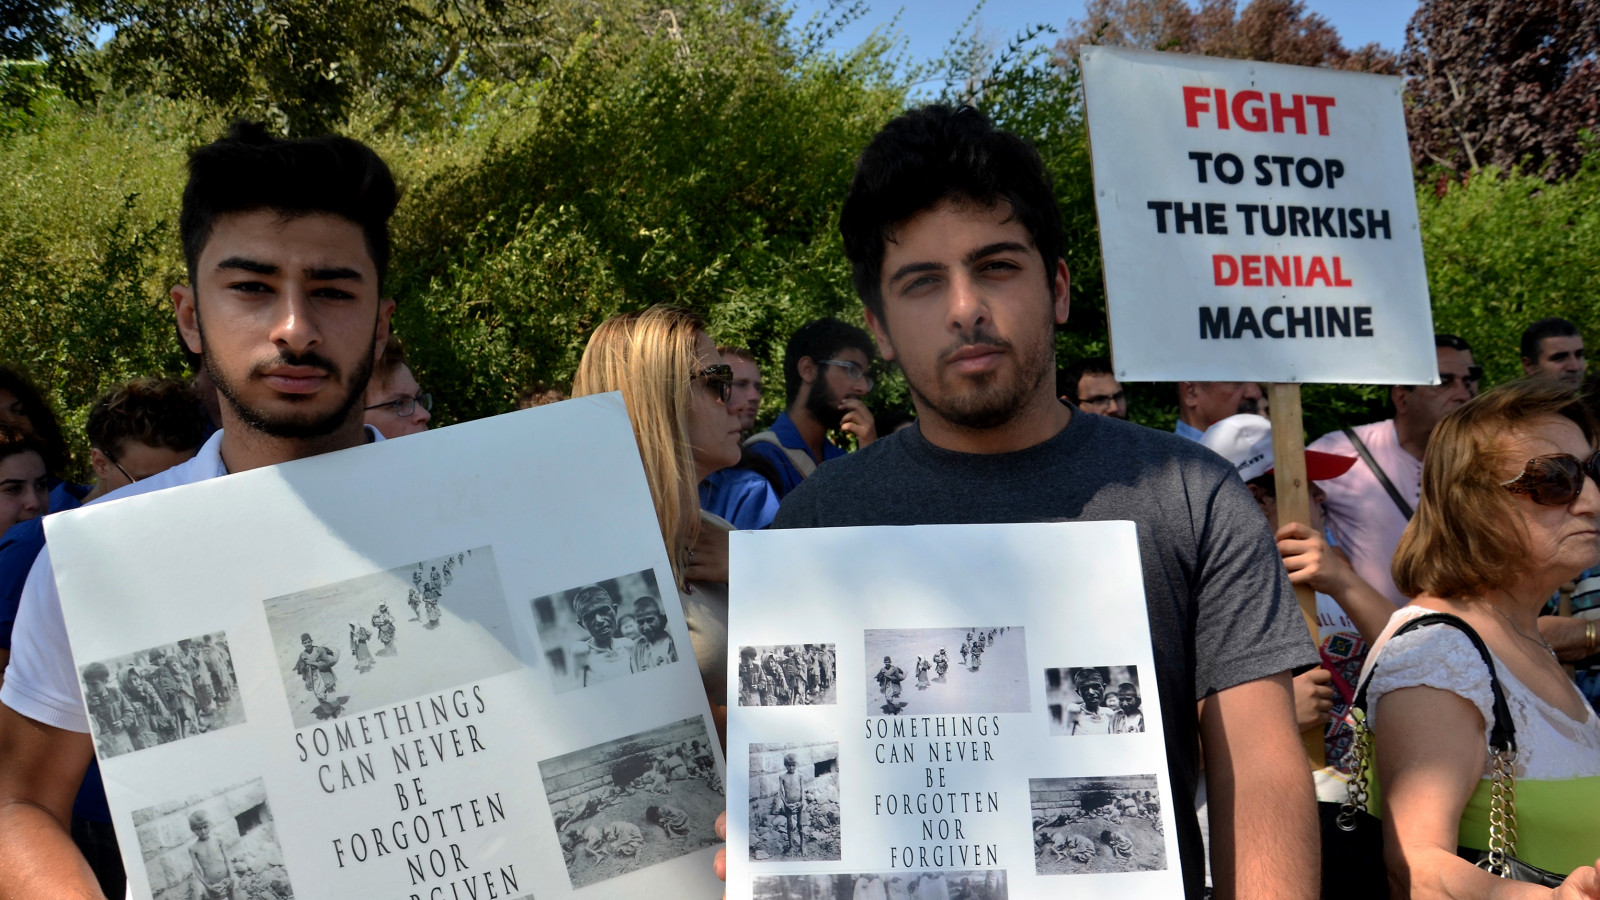 הפגנה מחוץ לדיון על הכרה ברצח העם הארמני בכנסת. 5 ביולי 2016 צילום: אוריאל לוי